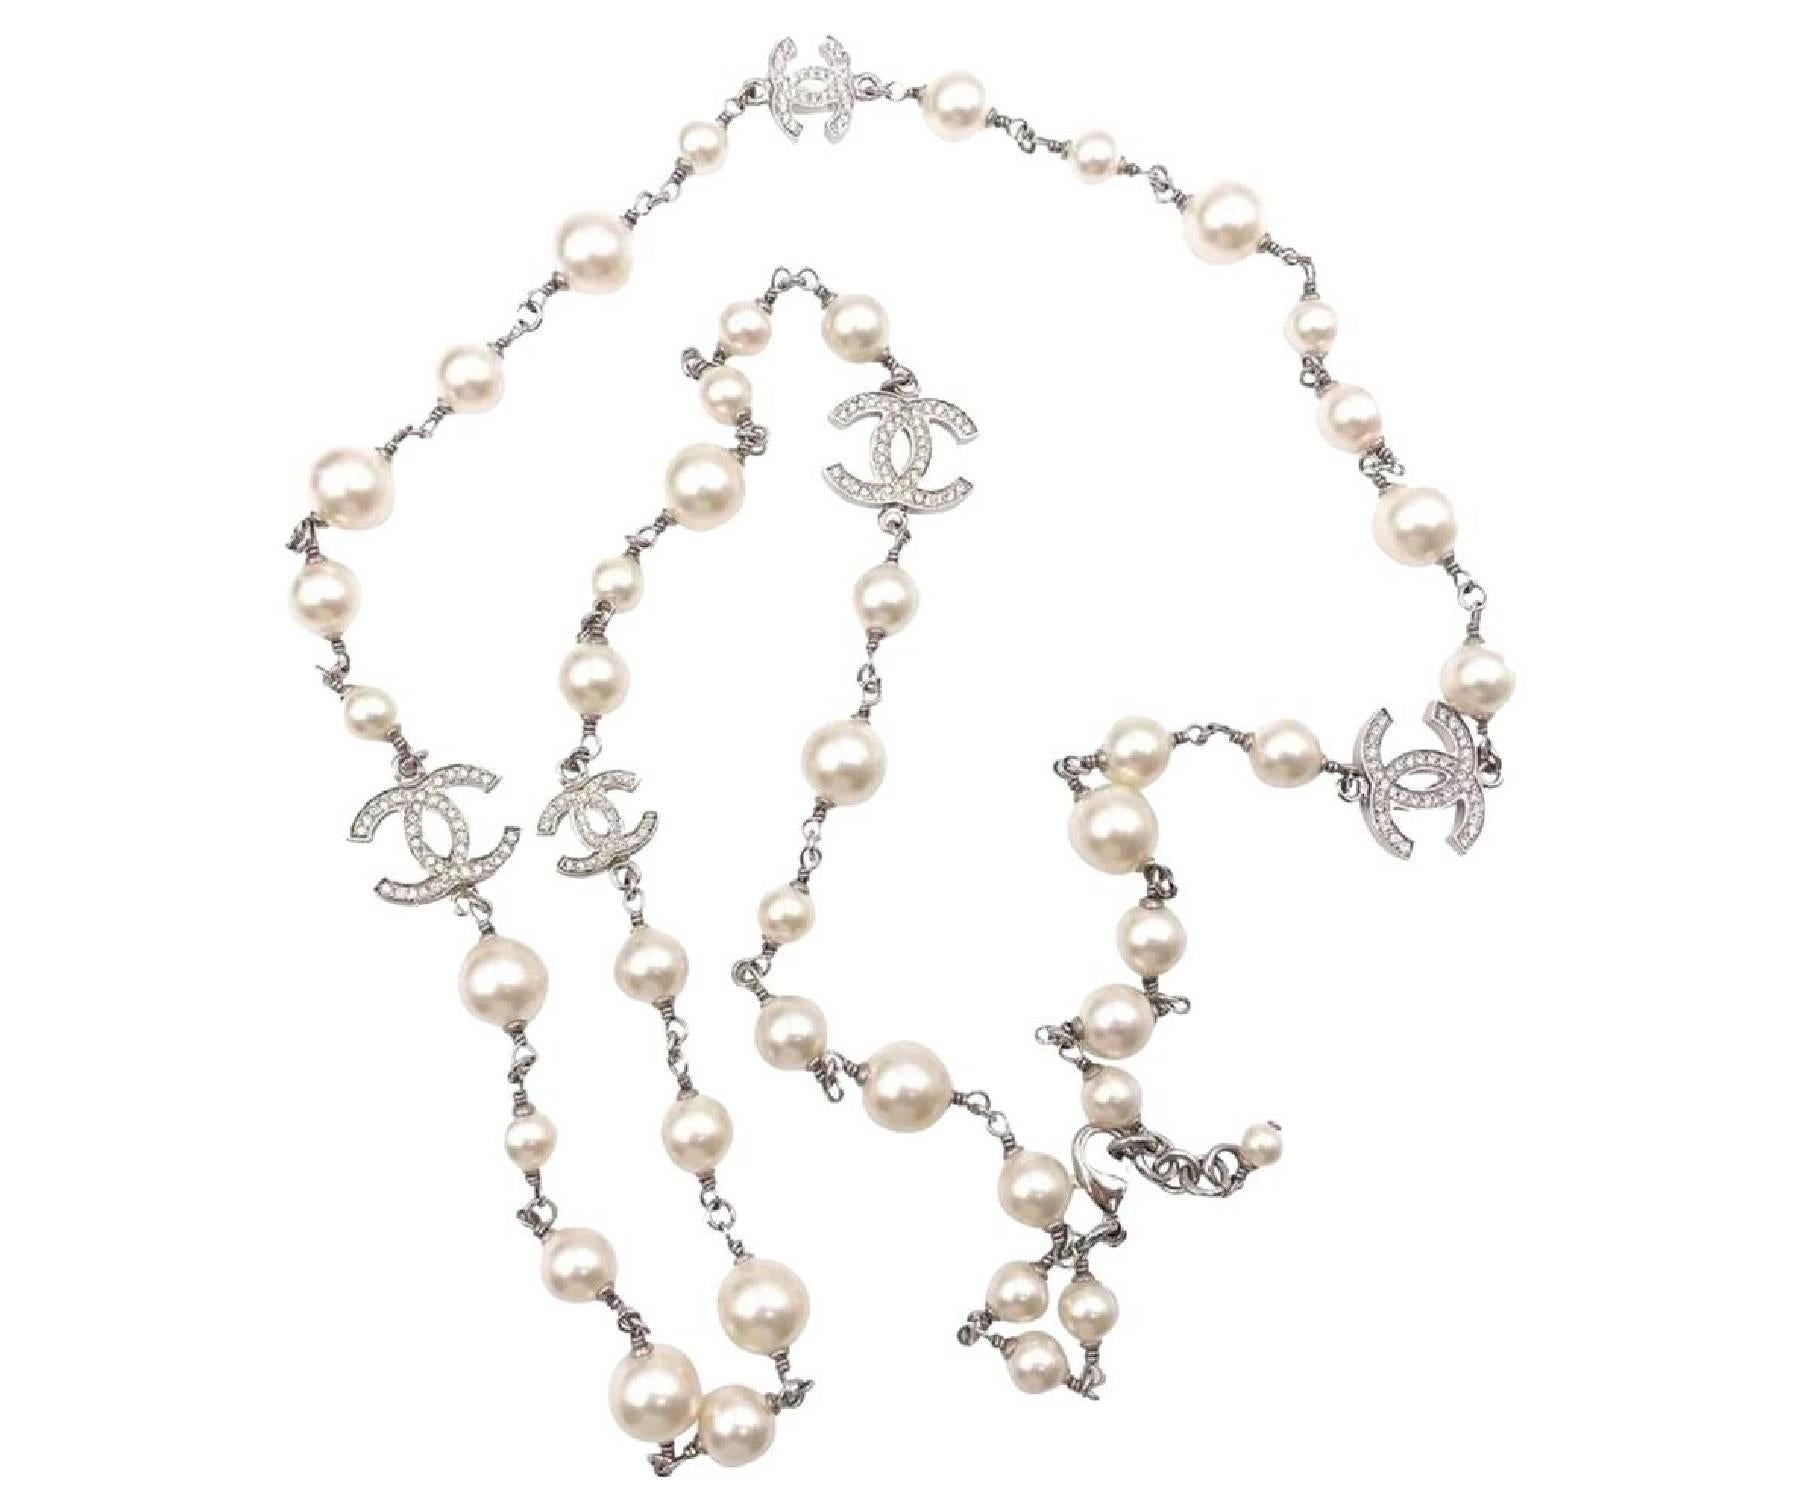 Lange Chanel-Halskette, 5 Silber CC Kristall Kunstperlen

* Markiert 15
* Hergestellt in Frankreich
* Kommt mit der Originalverpackung und Staubbeutel

-Er ist ungefähr 42